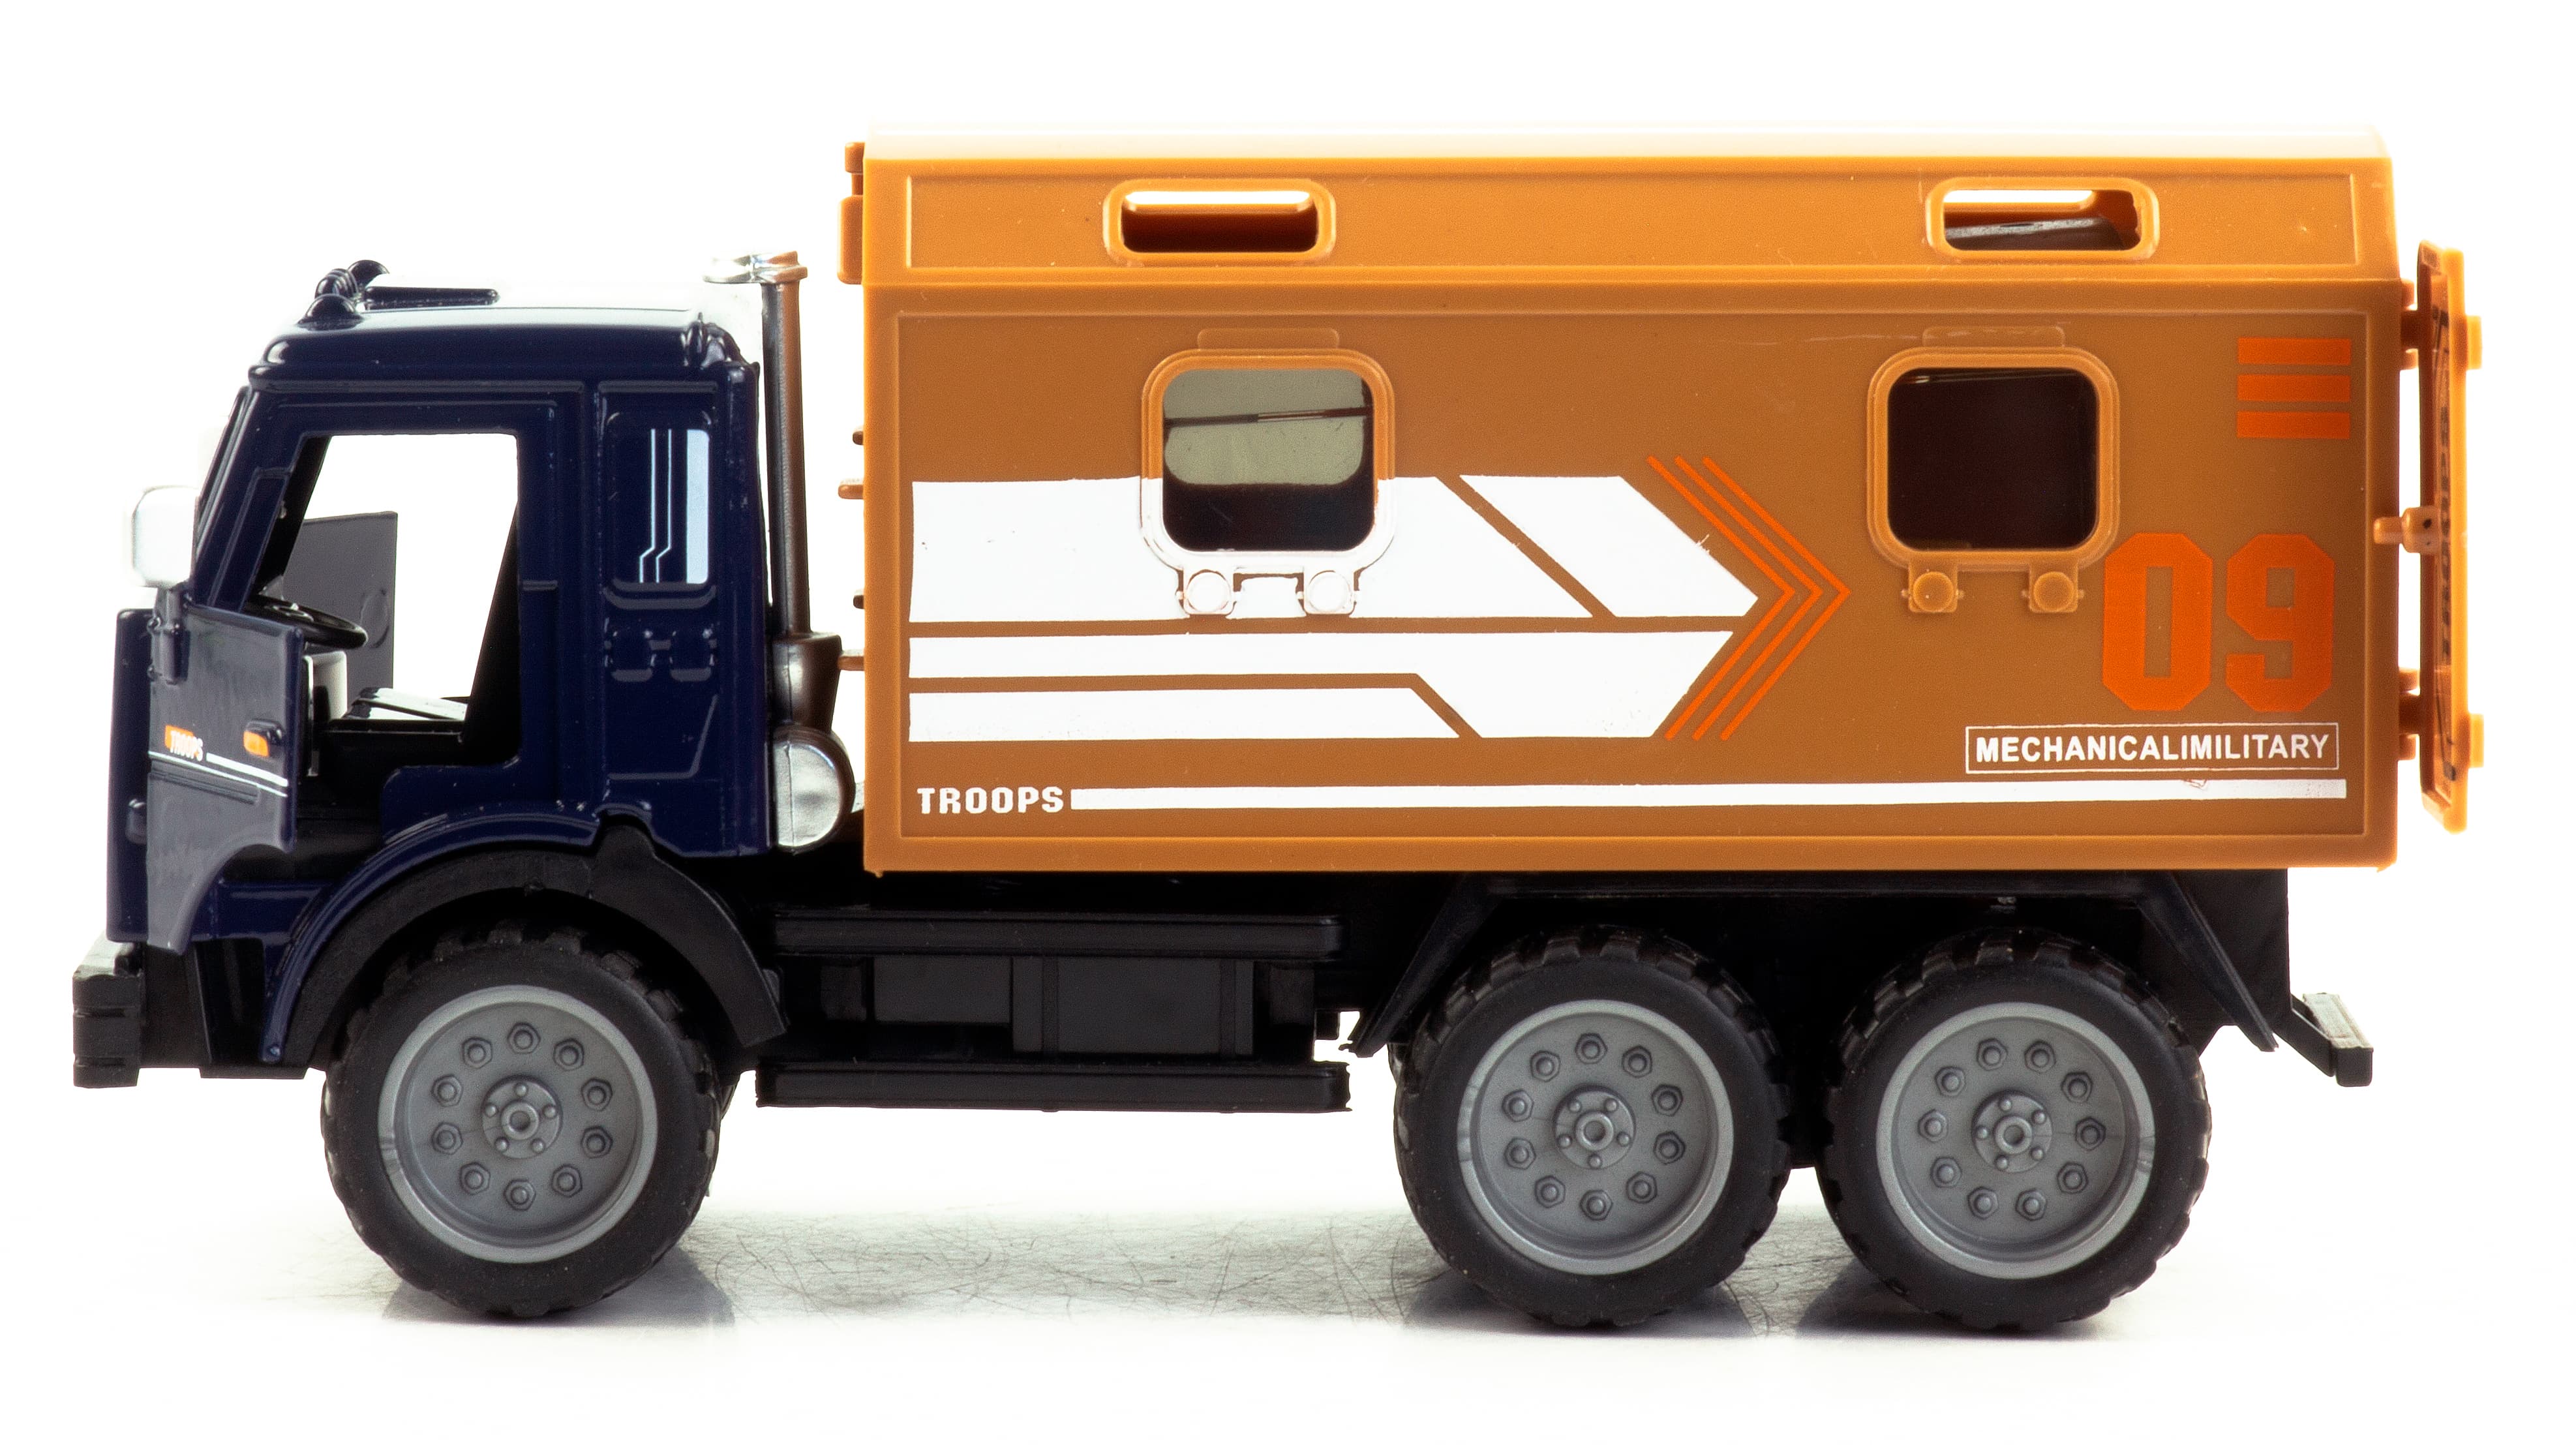 Машинка металлическая Yeading «Камаз: Служебный фургон» 16,5 см., YD6637A, инерционная, свет, звук / Оранжевый